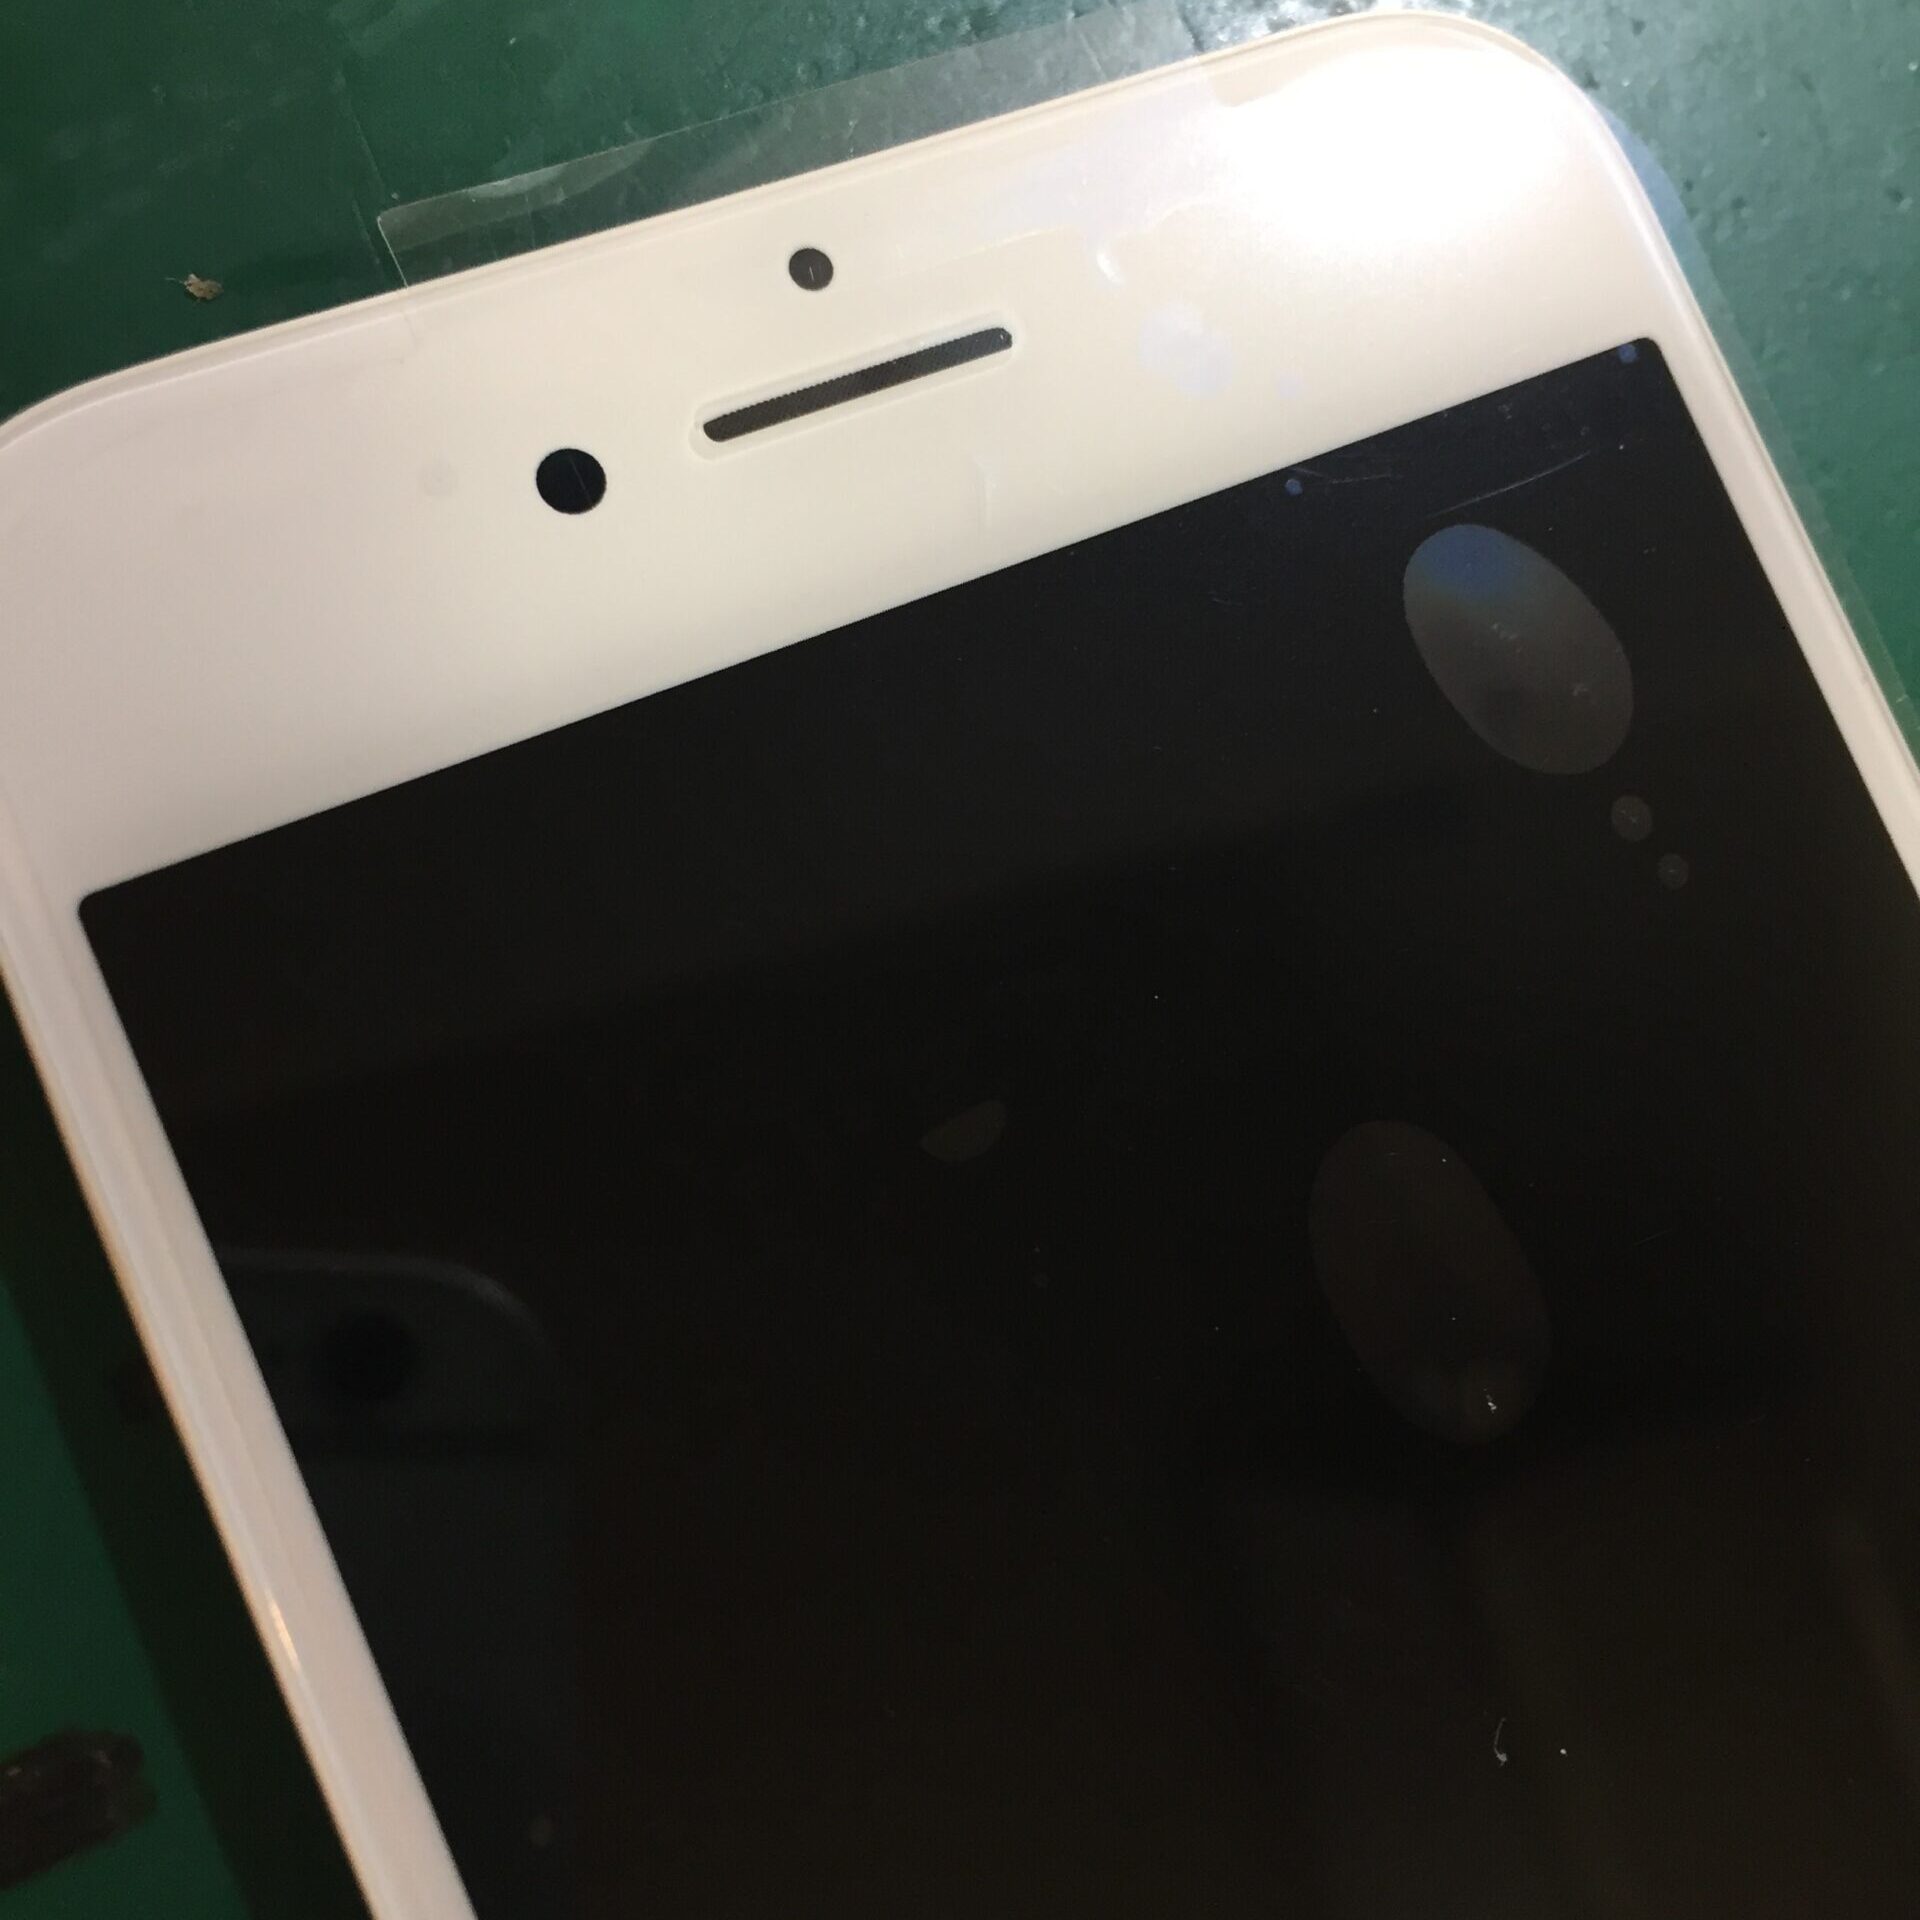 静岡店:iPhone8 ガラス割れ修理